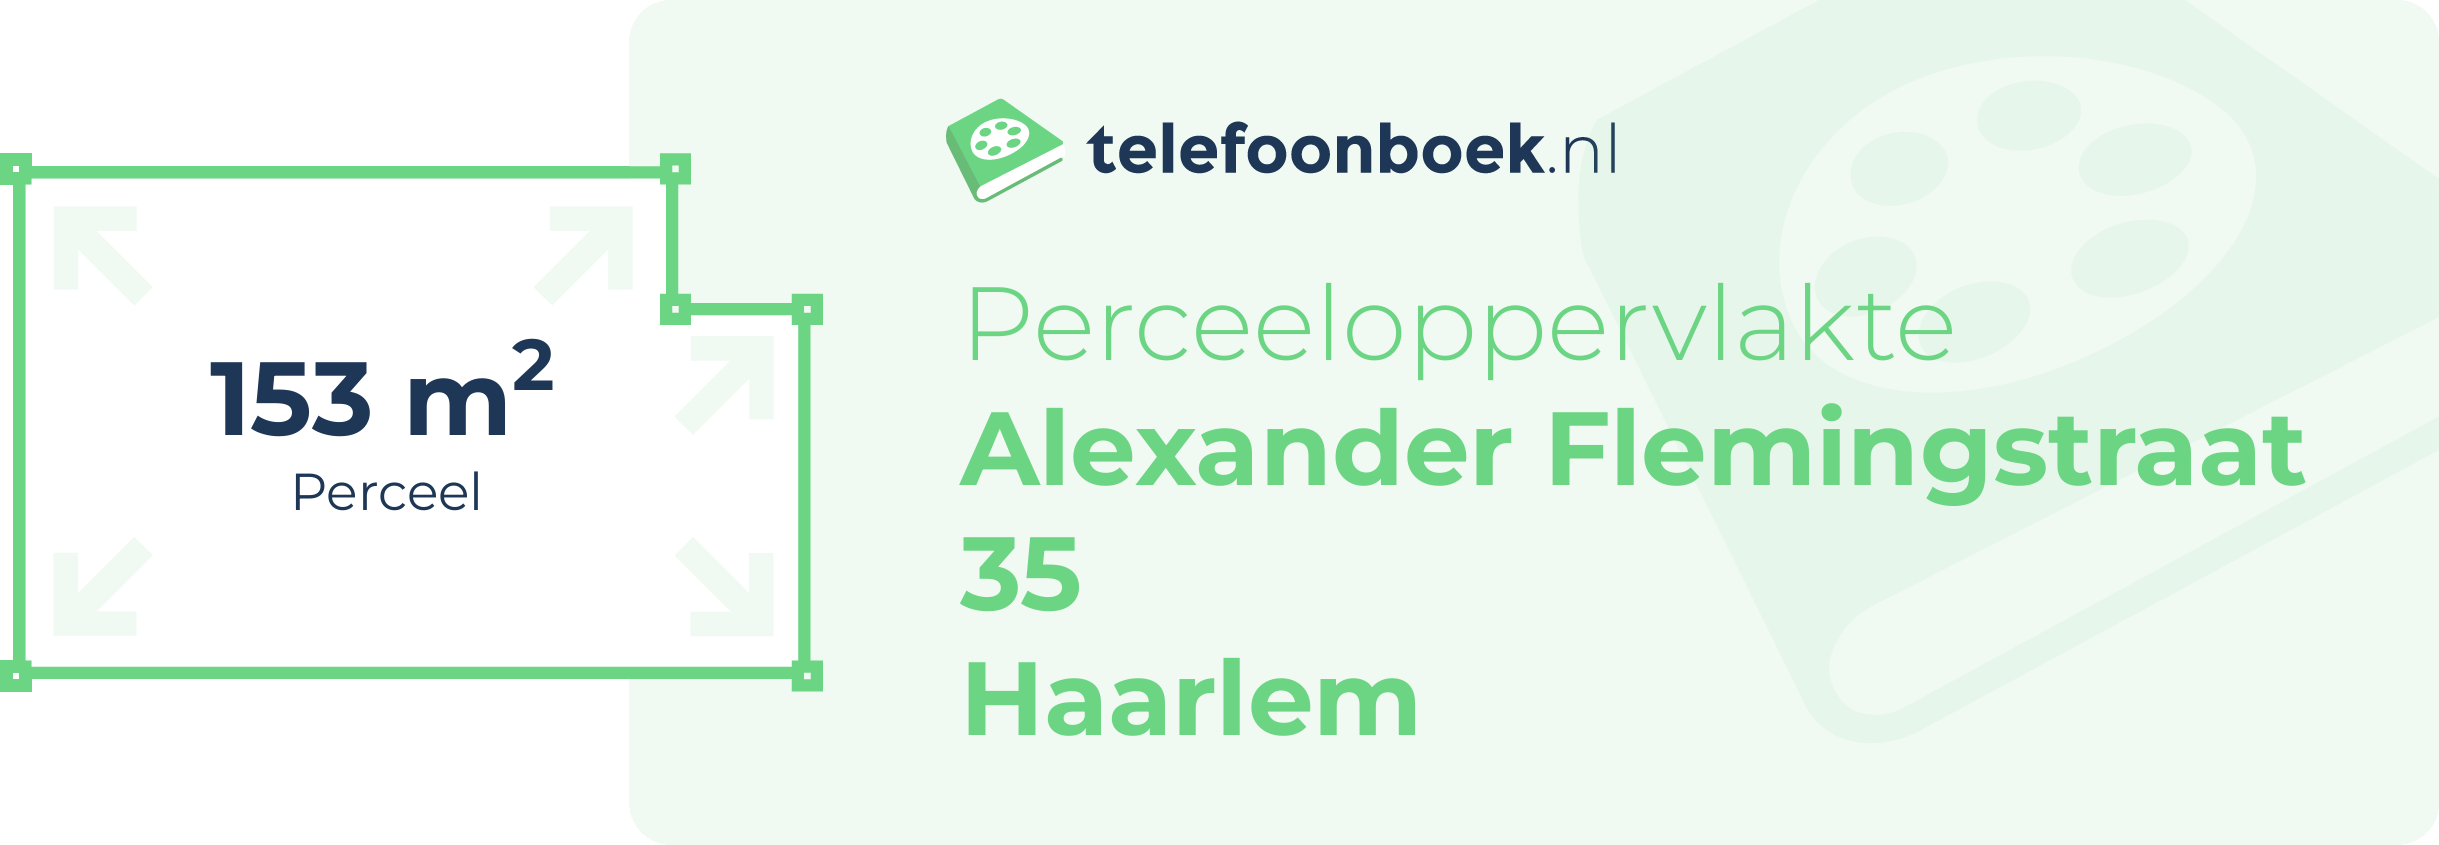 Perceeloppervlakte Alexander Flemingstraat 35 Haarlem